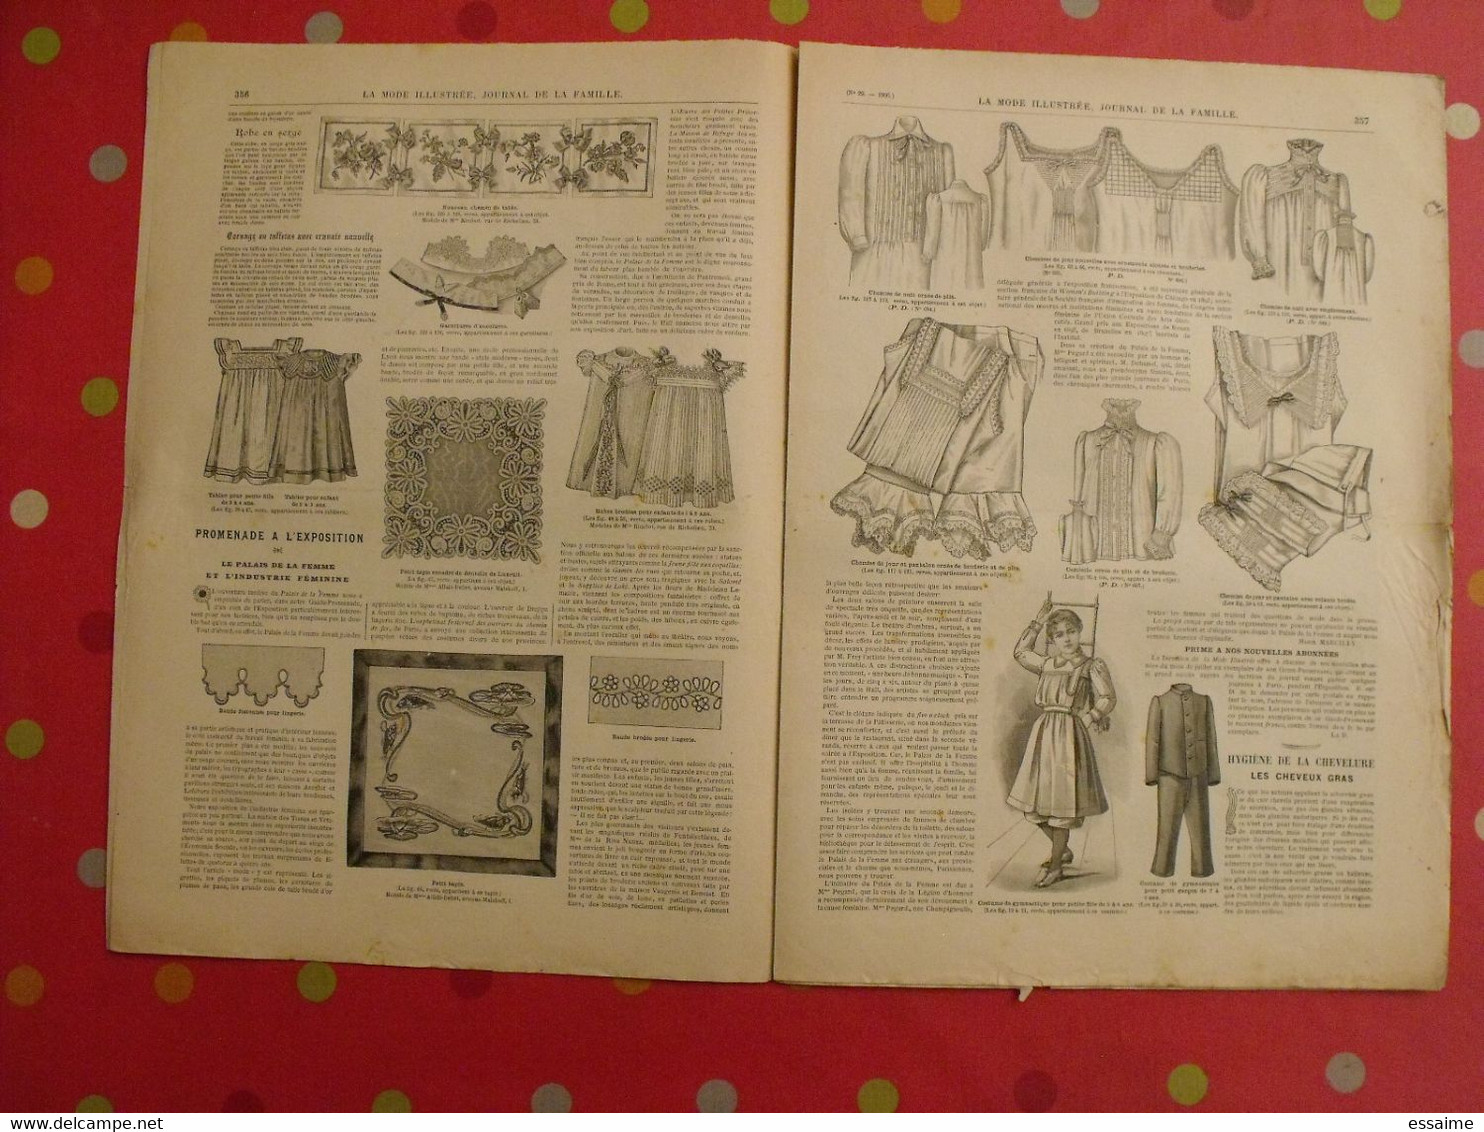 4 revues la mode illustrée, journal de la famille.  n° 29,30,32,33 de 1900. couverture en couleur. jolies gravures